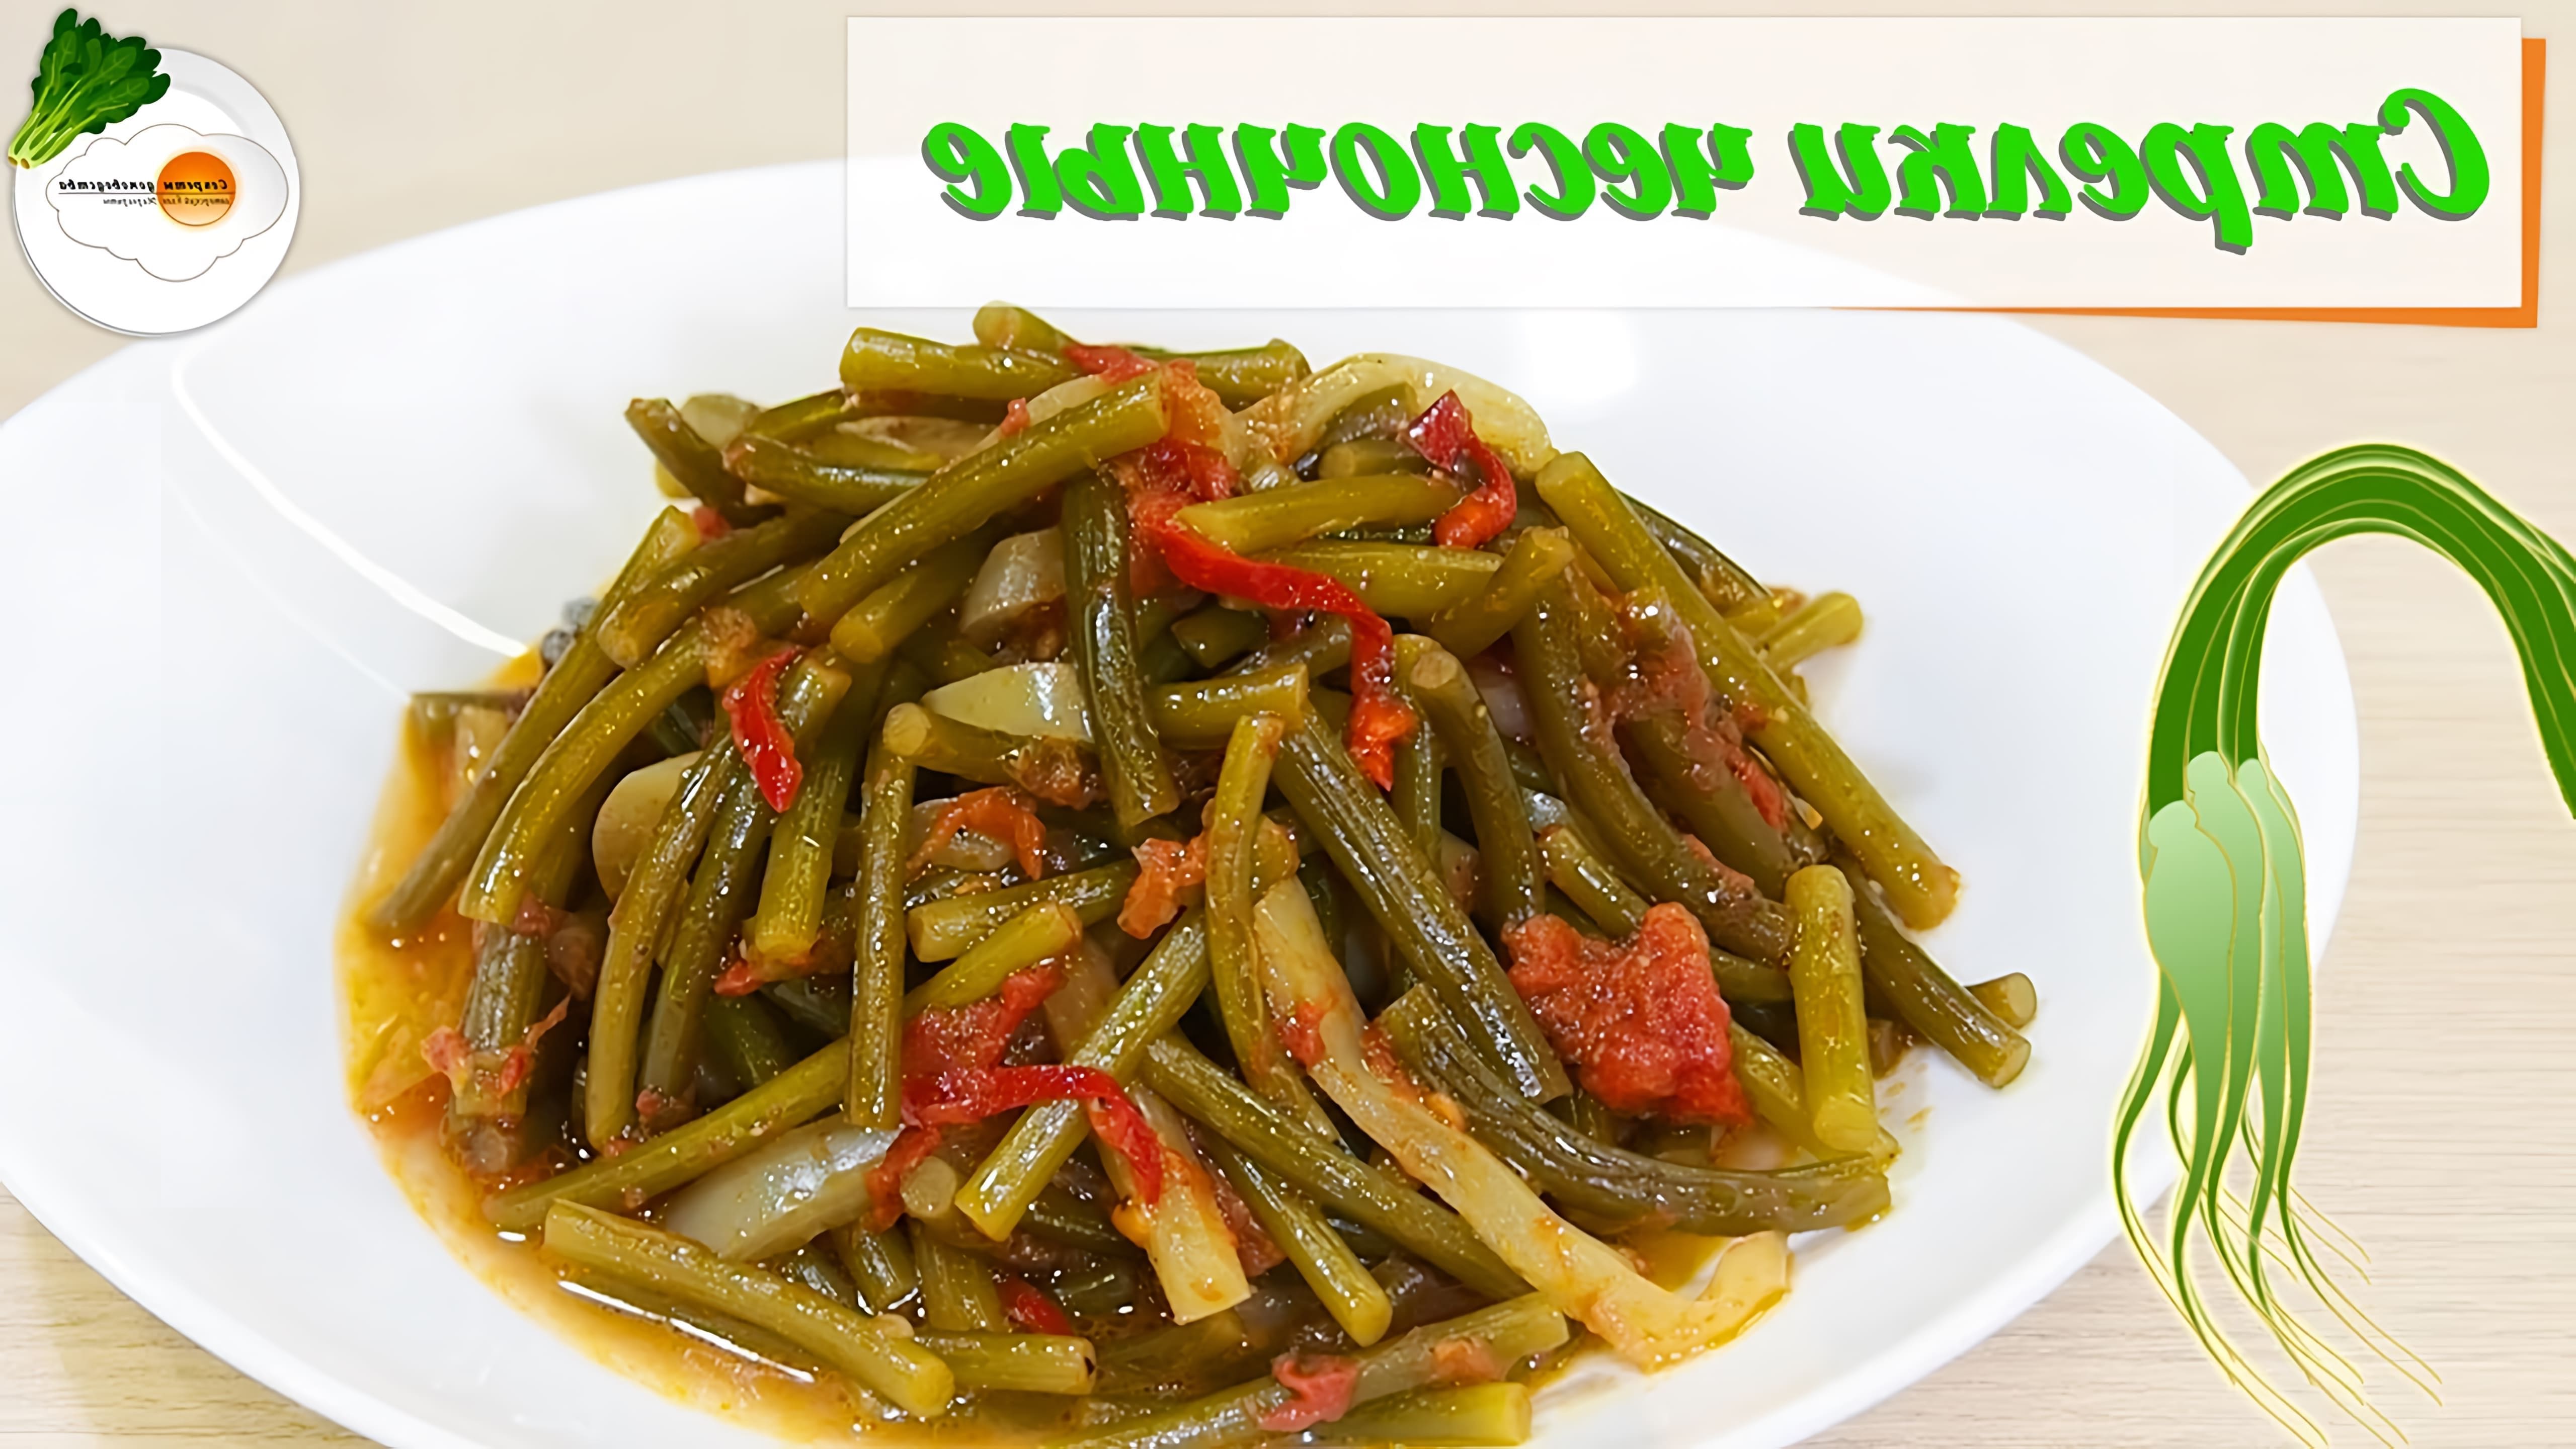 В этом видео демонстрируется простой и вкусный рецепт приготовления чесночных стрелок с помидорами и болгарским перцем